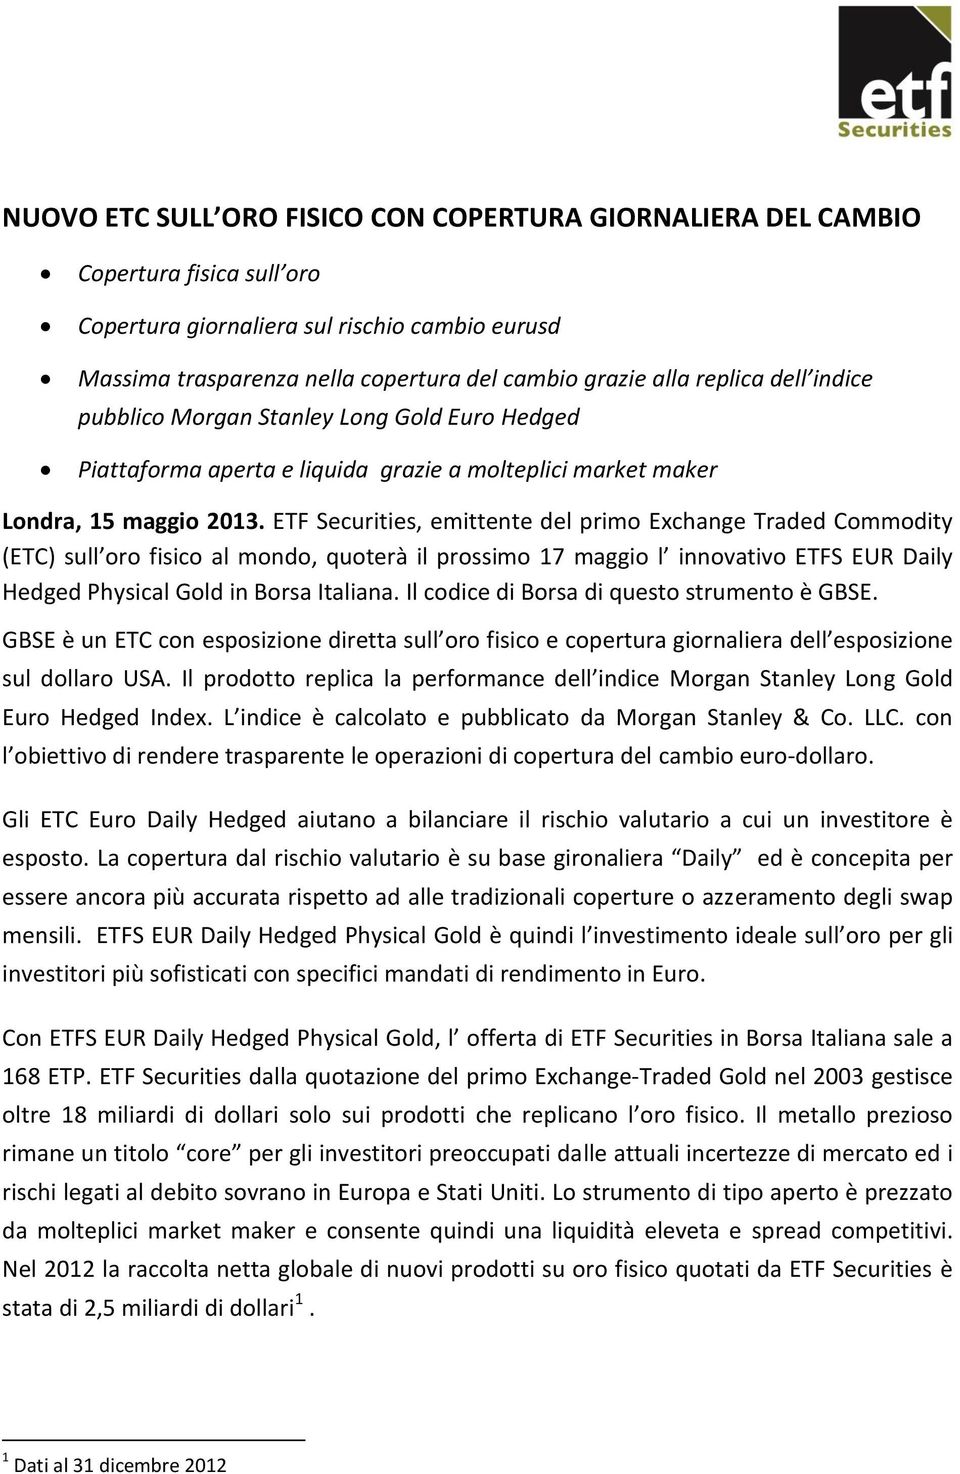 ETF Securities, emittente del primo Exchange Traded Commodity (ETC) sull oro fisico al mondo, quoterà il prossimo 17 maggio l innovativo ETFS EUR Daily Hedged Physical Gold in Borsa Italiana.